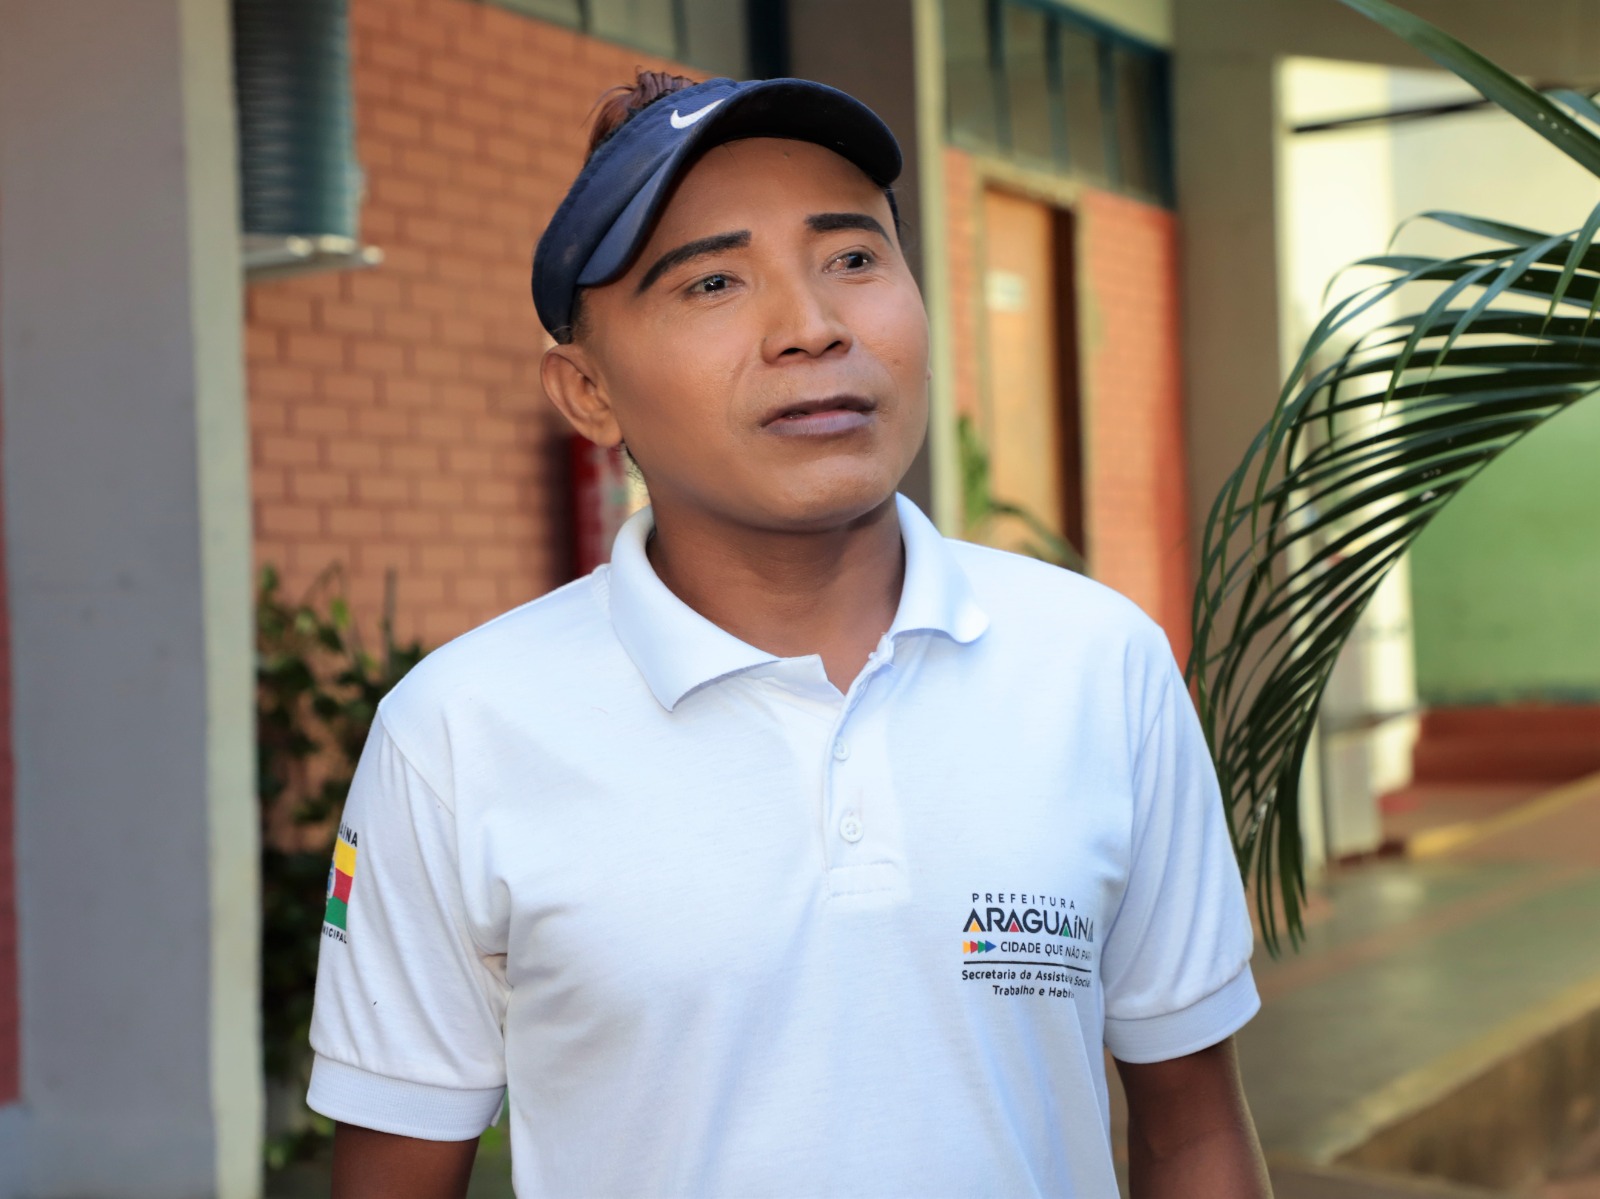 Ucisinio Rojas faz parte dos imigrantes atendidos e foi contratado para trabalhar nos serviços gerais da Secretaria de Assistência Social, Trabalho e Habitação